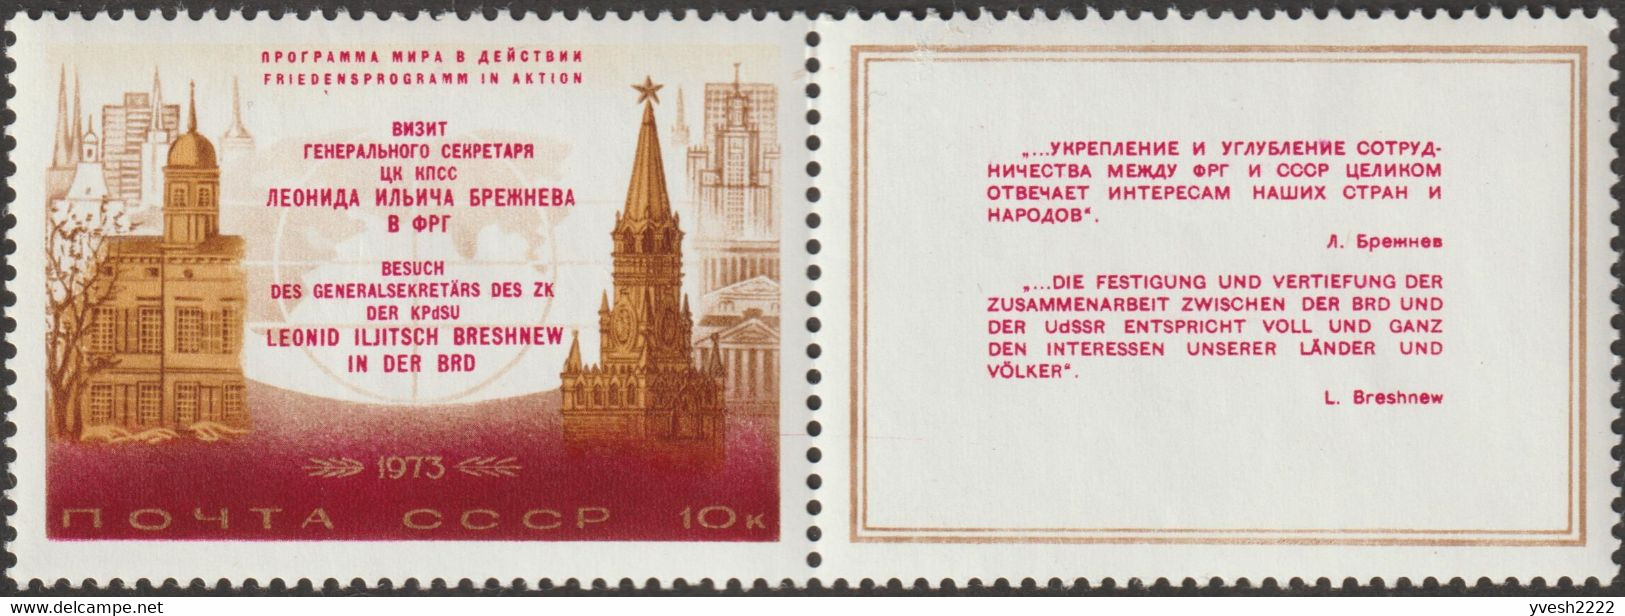 URSS 1973 Y&T 3959. Curiosité De Couleurs. Palais Schaumburg, Bonn; Tour Spassky, Moscou. Voyage Brejnev - Varietà E Curiosità